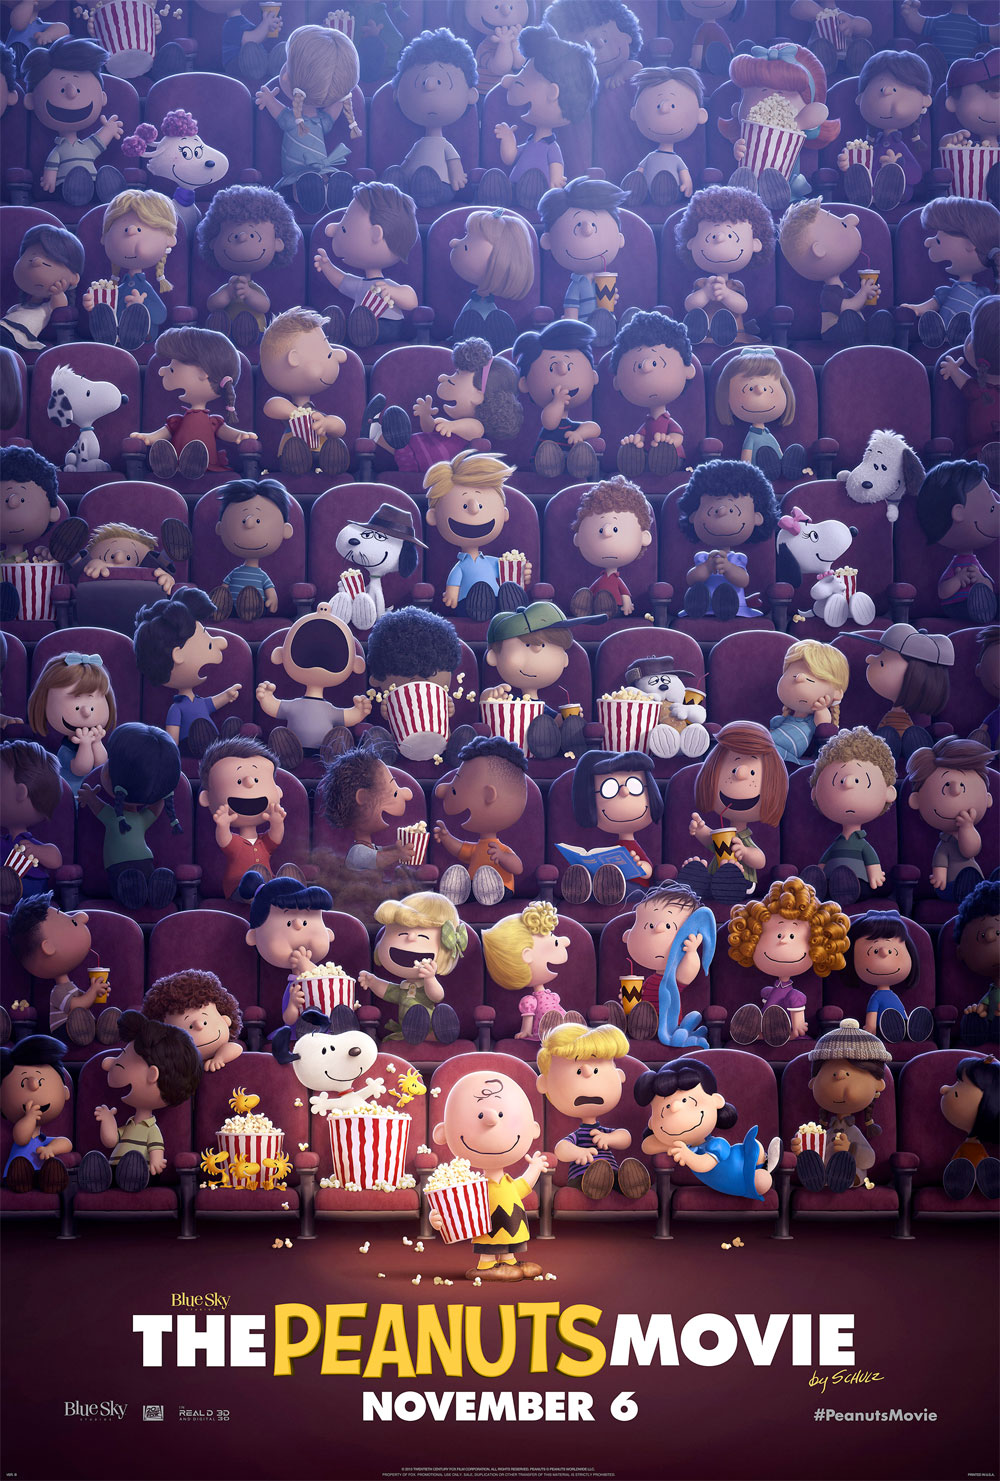 Poster Snoopy & Friends - Il film dei Peanuts